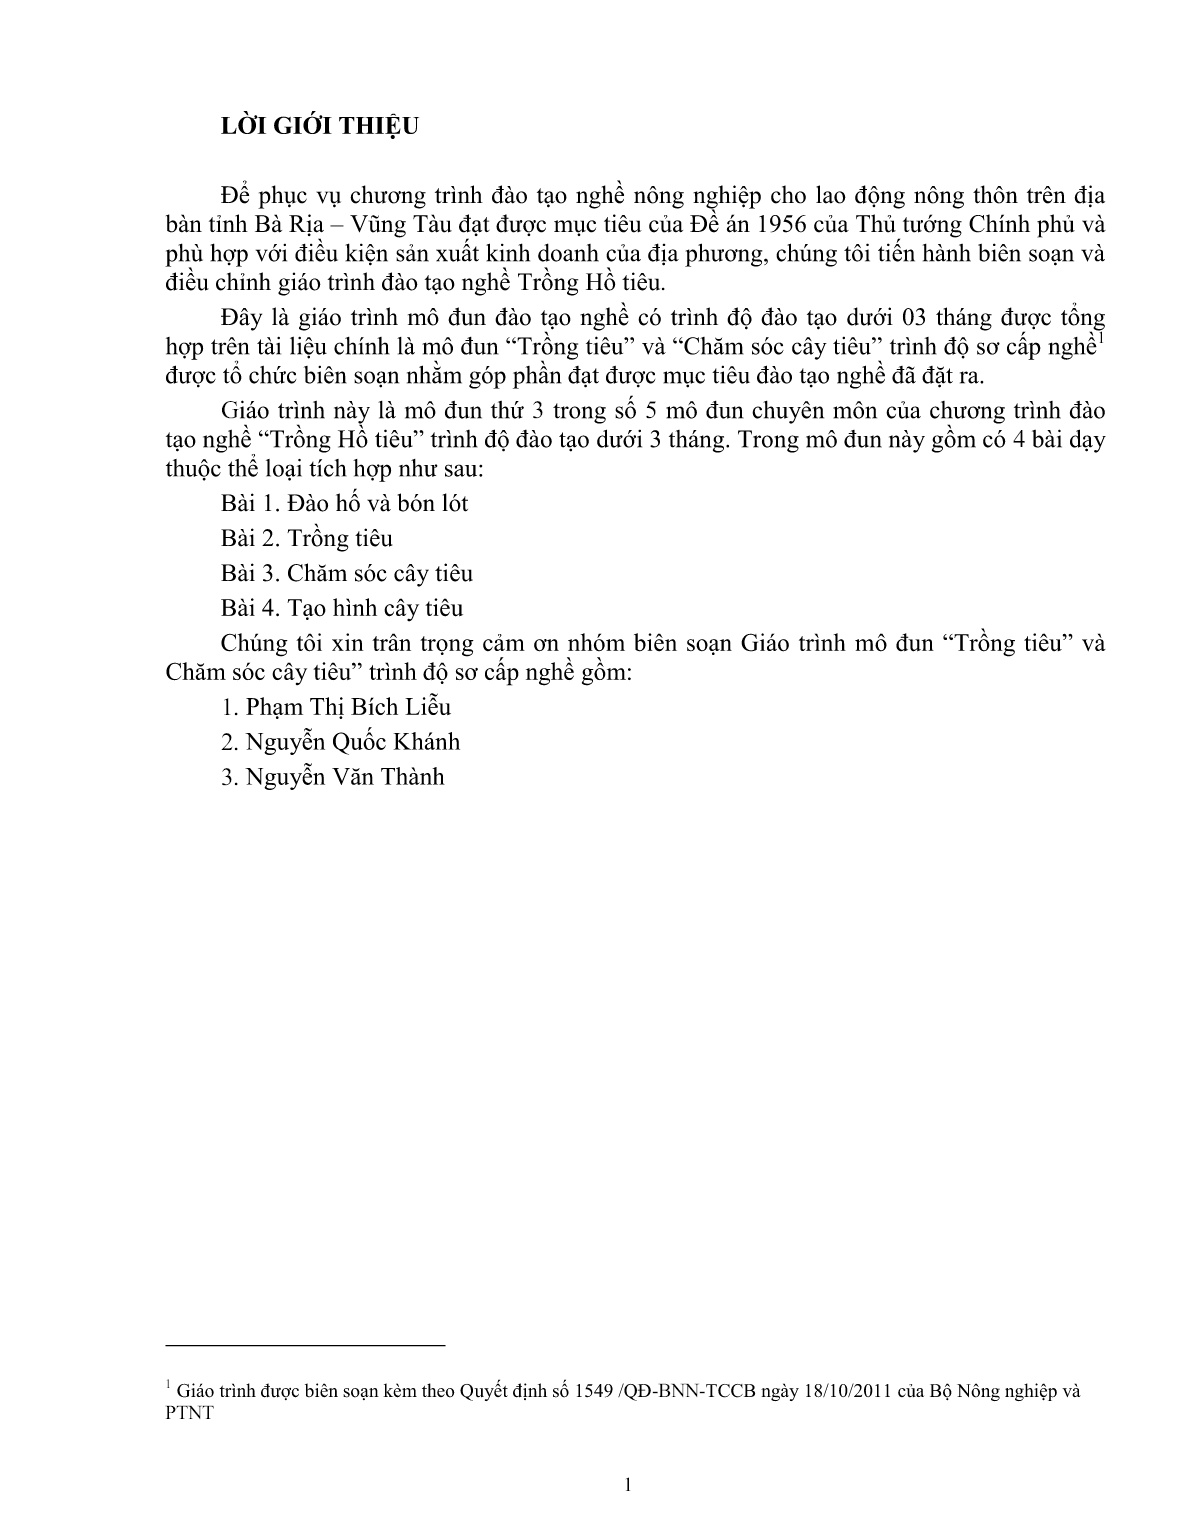 Giáo trình mô đun Trồng và chăm sóc hồ tiêu (Trình độ: Đào tạo dưới 3 tháng) trang 2